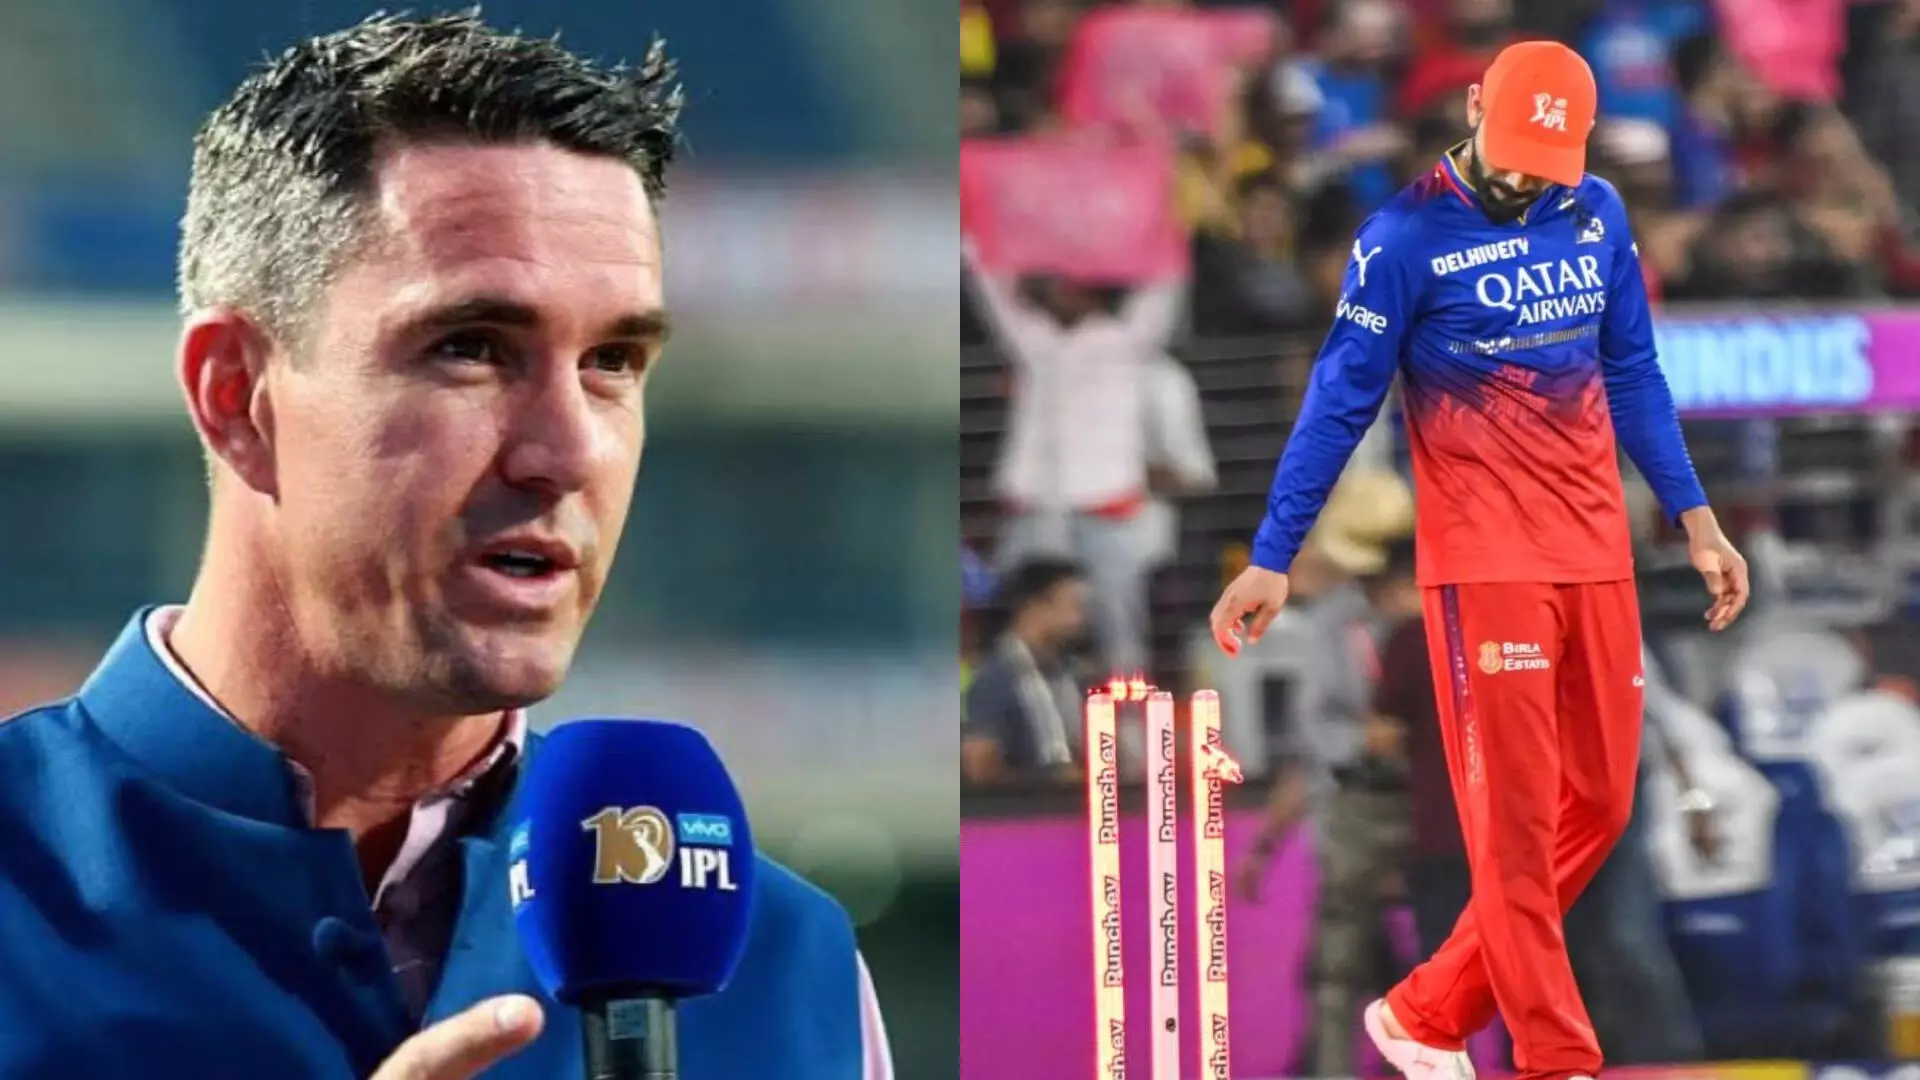 विराट कोहली आरसीबी छोड़ दें और कहीं और गौरव की तलाश करें- केविन पीटरसन